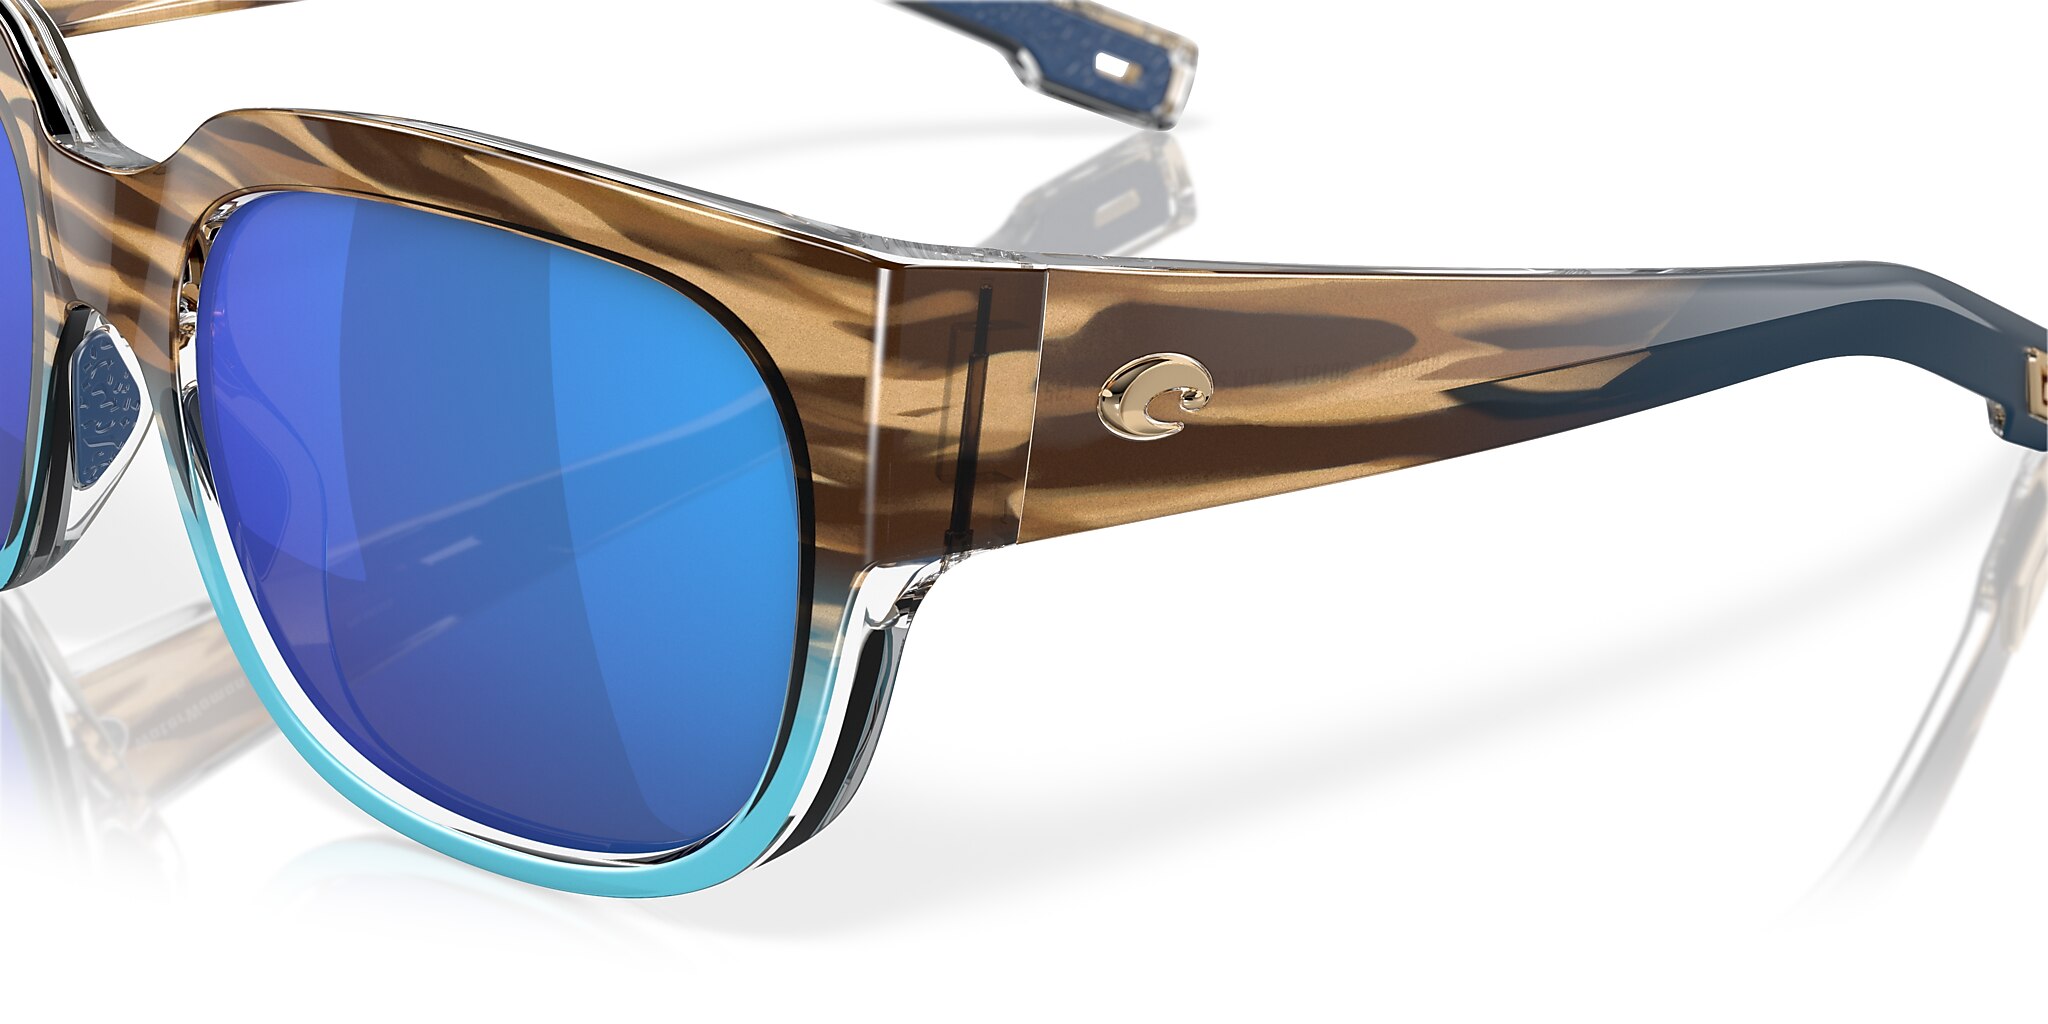 Waterwoman Polarized Sunglasses in Blue Mirror | Costa Del Mar®